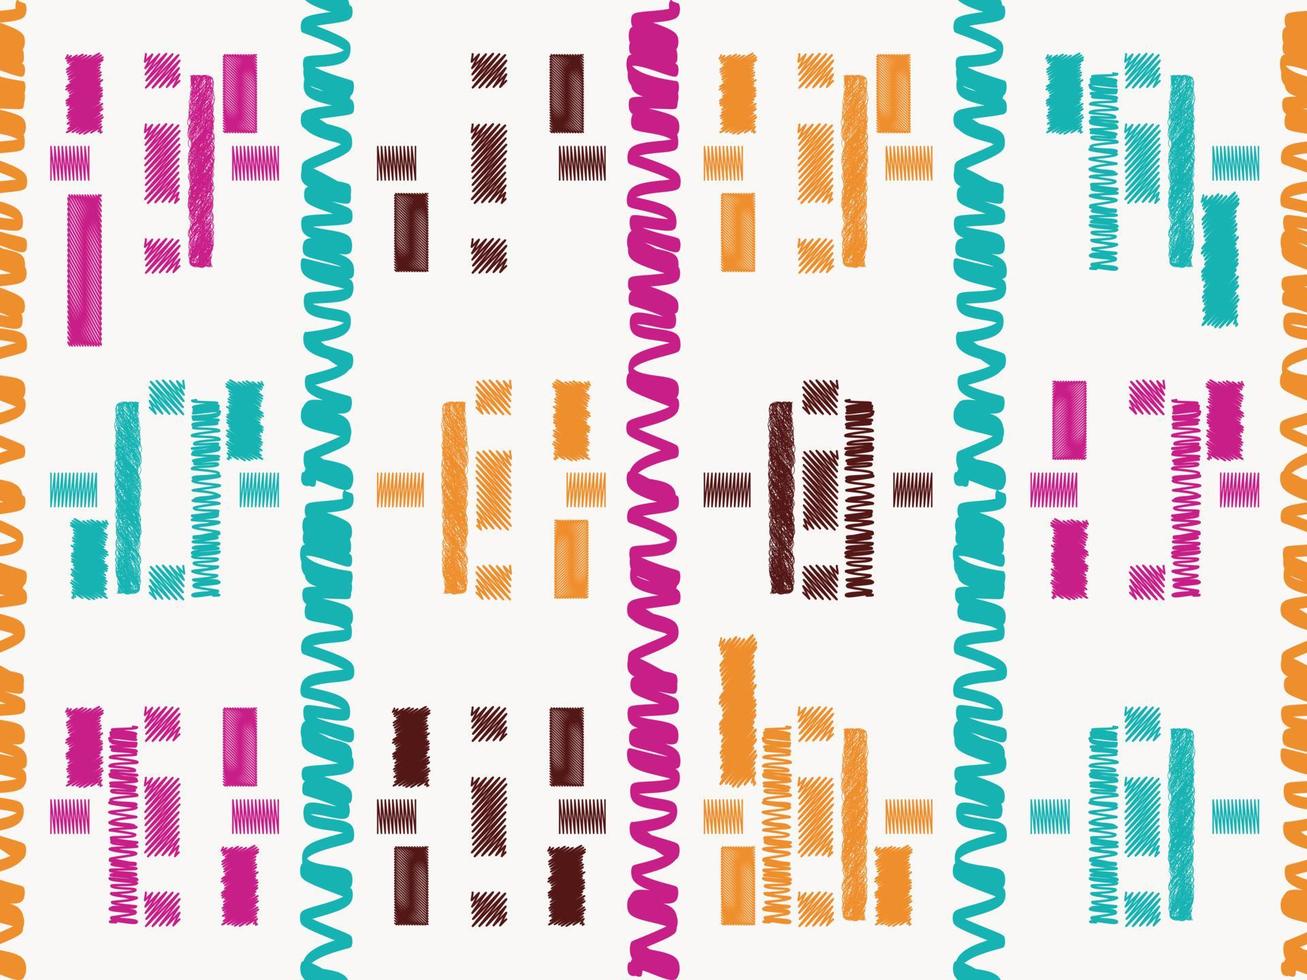 uit de vrije hand schetsen tekening aztec kleding stof naadloos patroon ontwerp etnisch aztec kleding stof tapijt mandala ornament inheems boho chevron textiel. vector